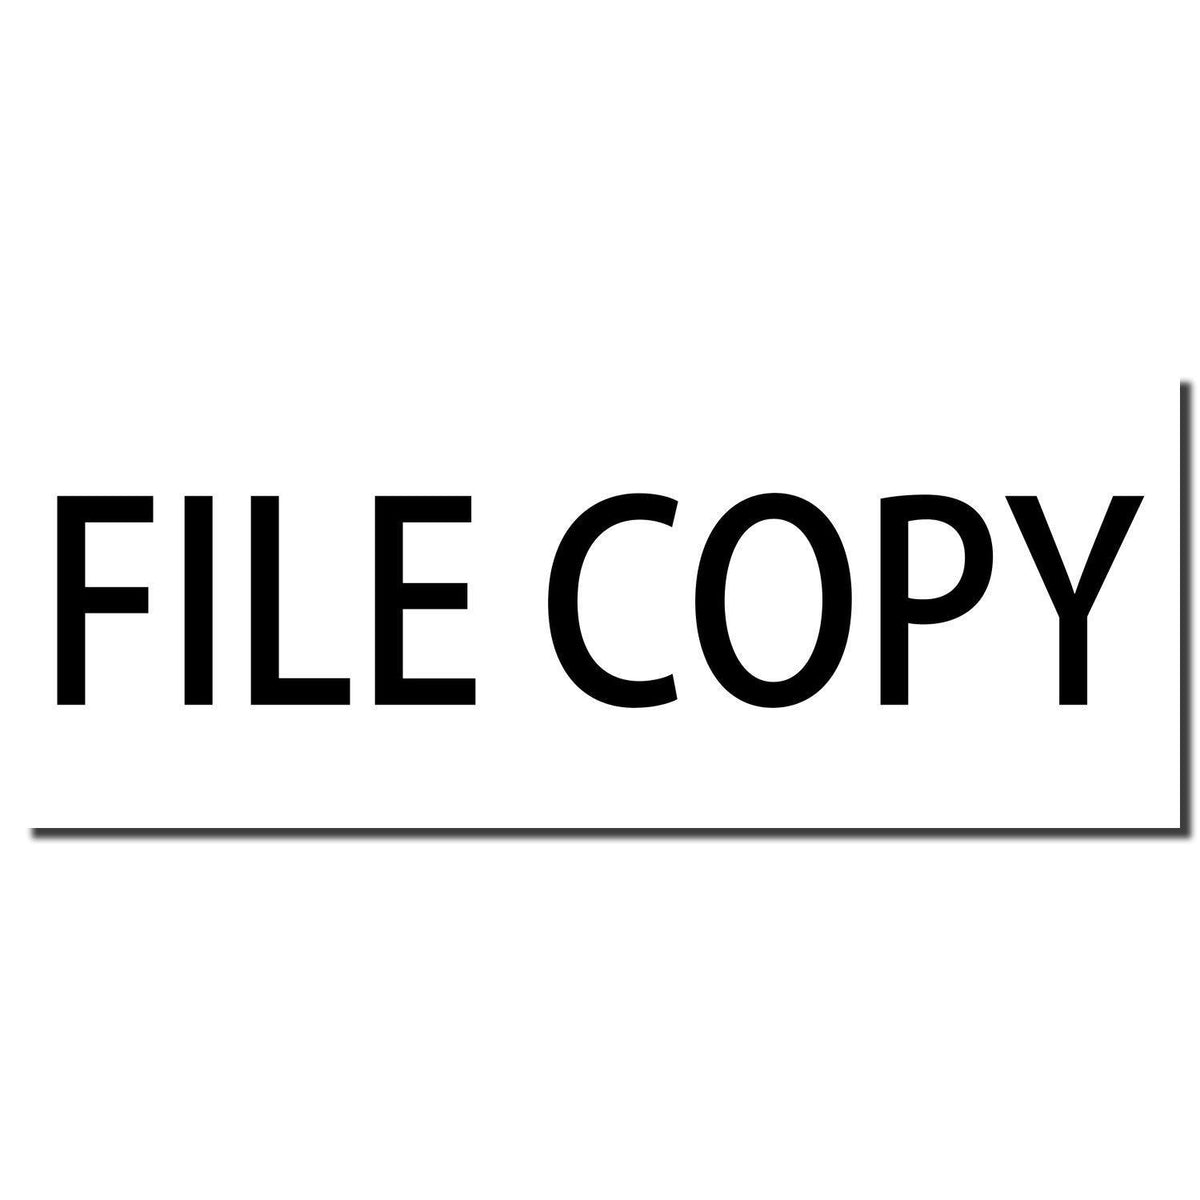 Enlarged Imprint File Copy Rubber Stamp Sample